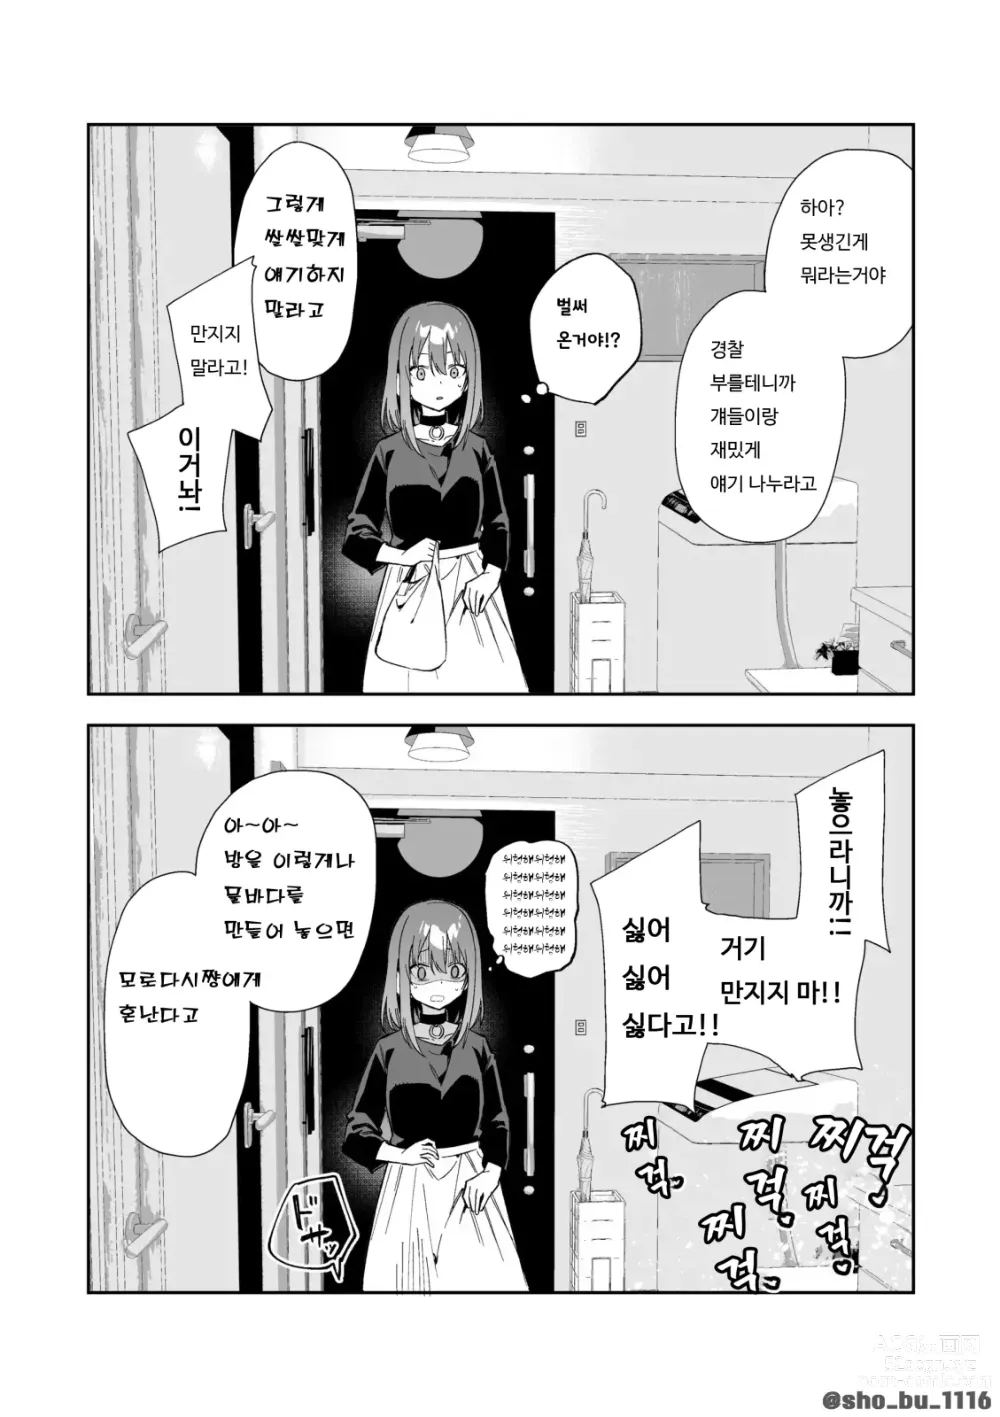 Page 7 of doujinshi 소꿉친구에게 상담하는 유명방송인 + 아키쟝 시점 만화 6P